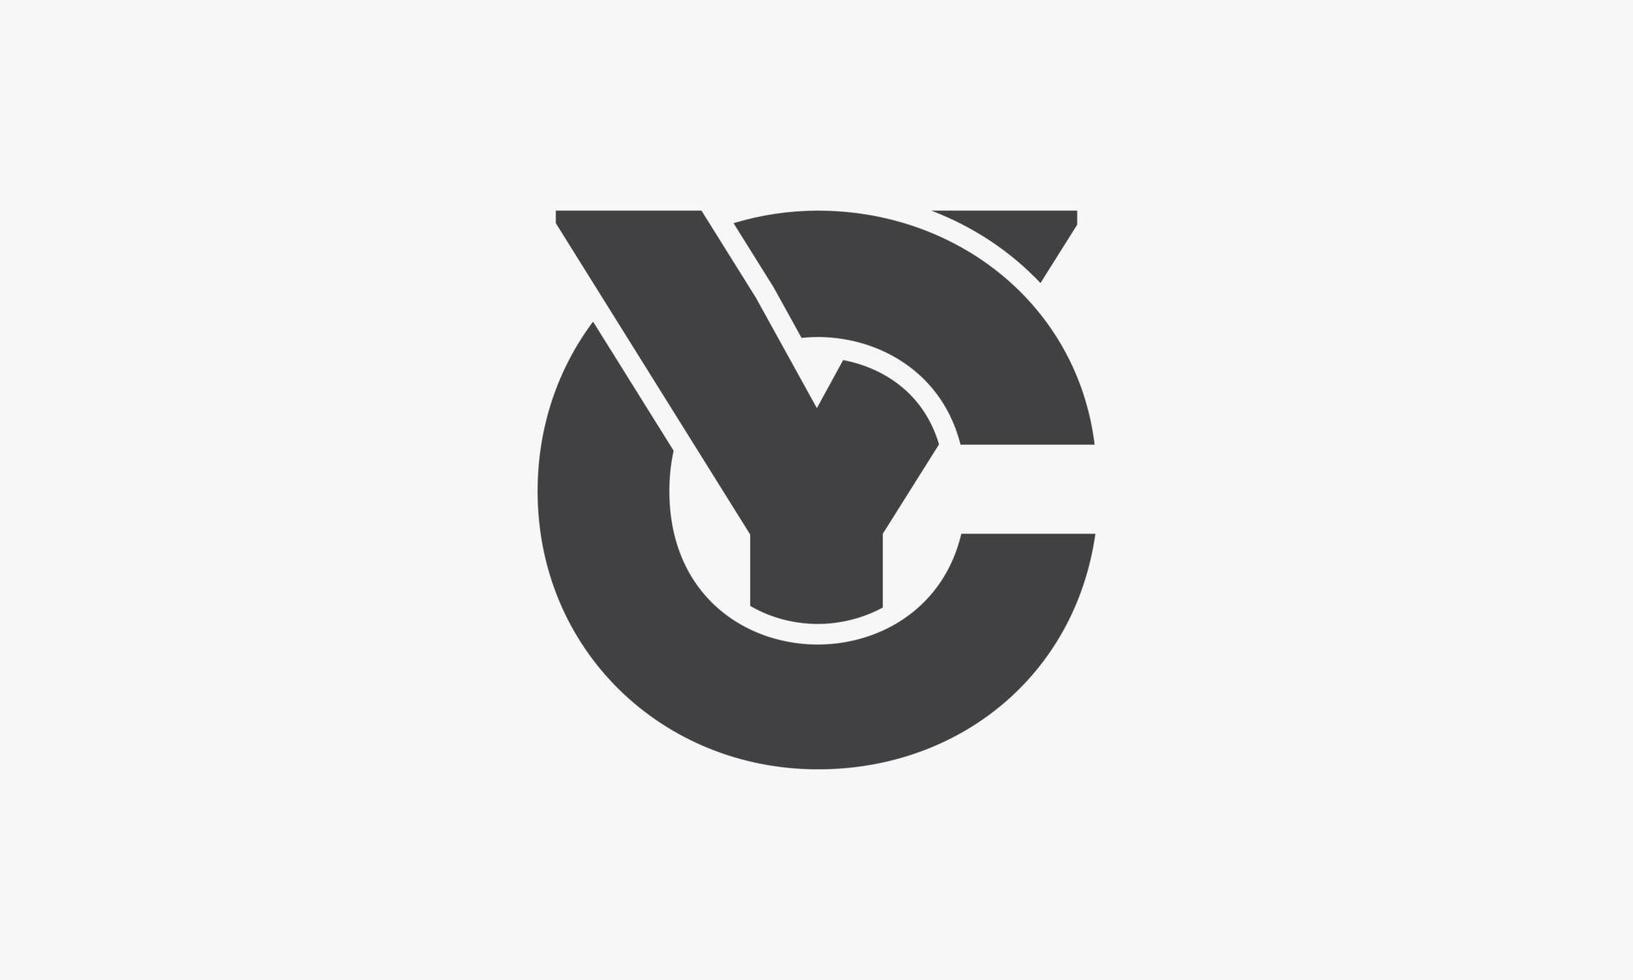 lettera cy o yc logo concetto isolato su sfondo bianco. vettore